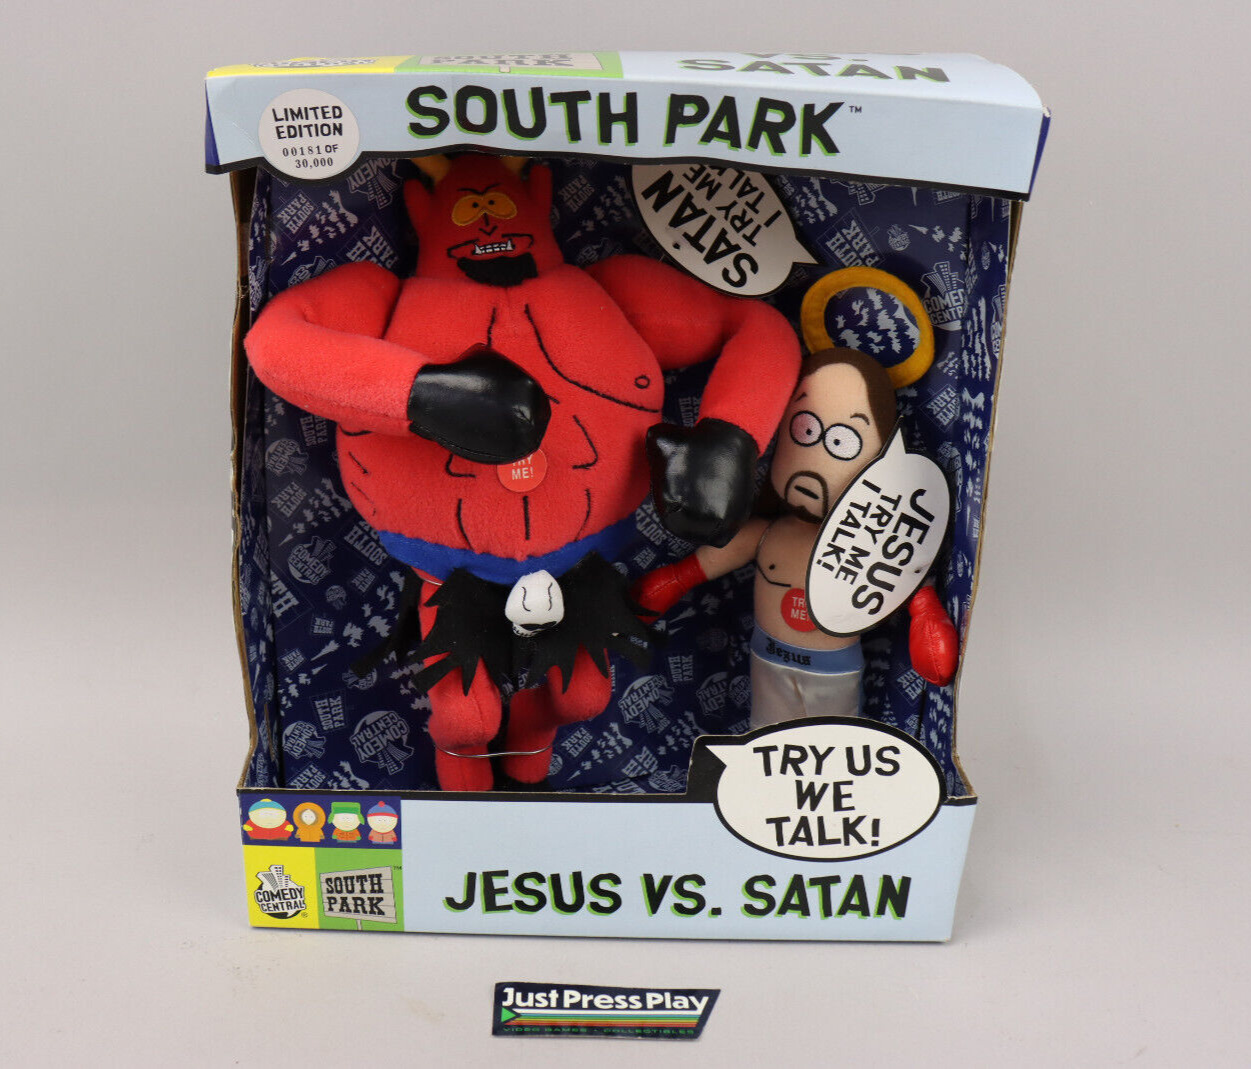 2002 Fun-4-All South Park Jesus vs. Satan L.E. Talking Plush Doll Set NIB Rare